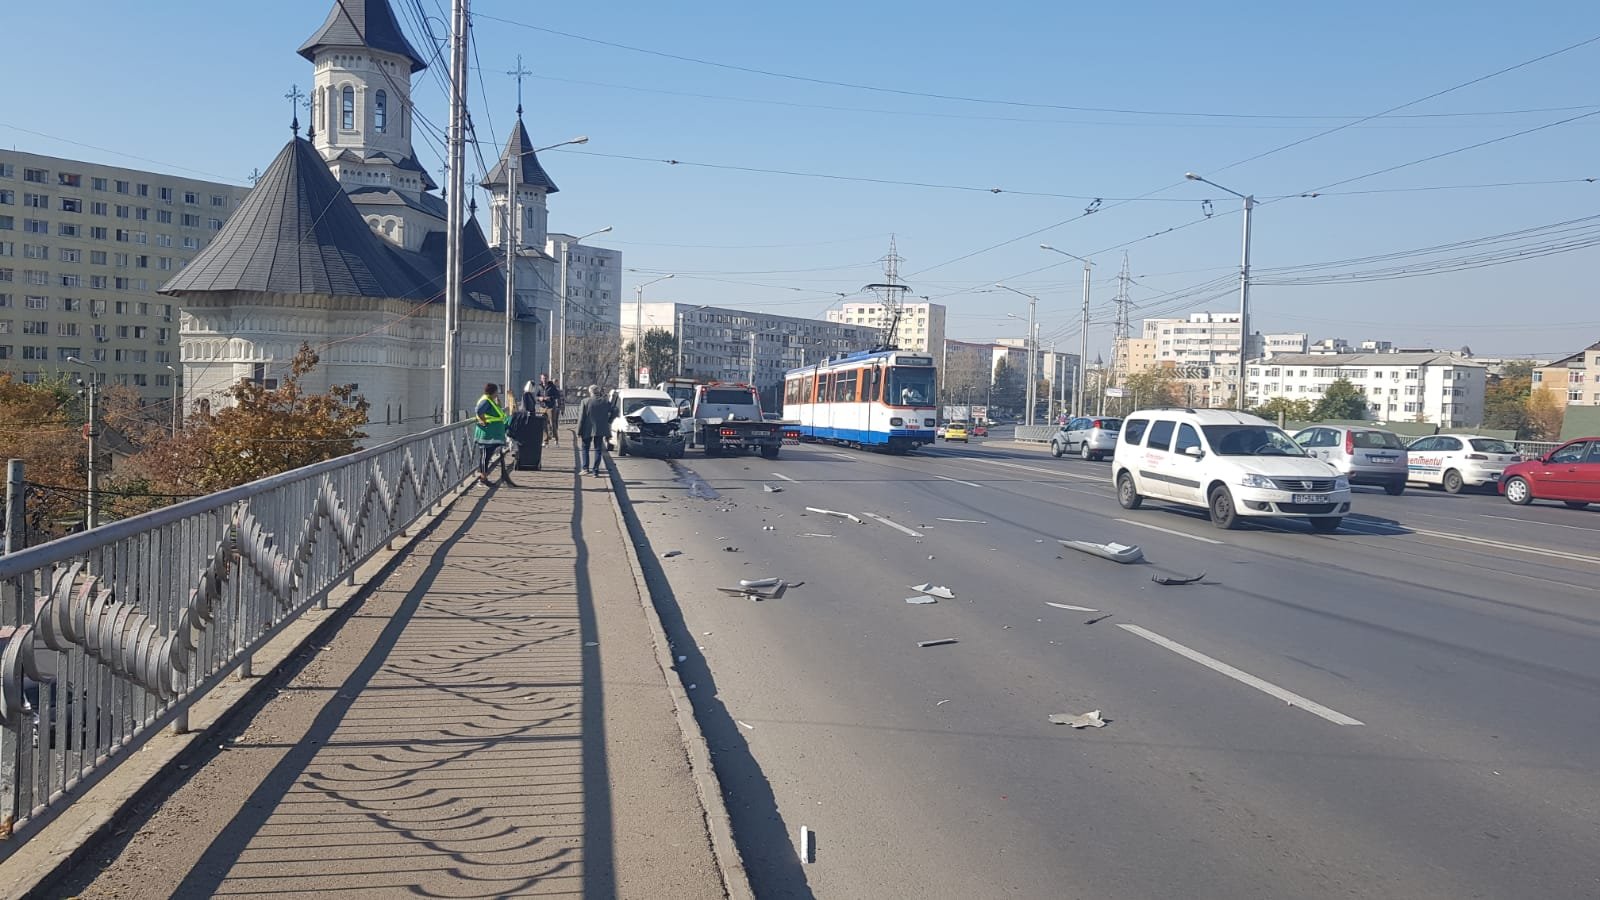  Accident cu victime, pe podul Alexandru: un şofer în prag de comă alcoolică